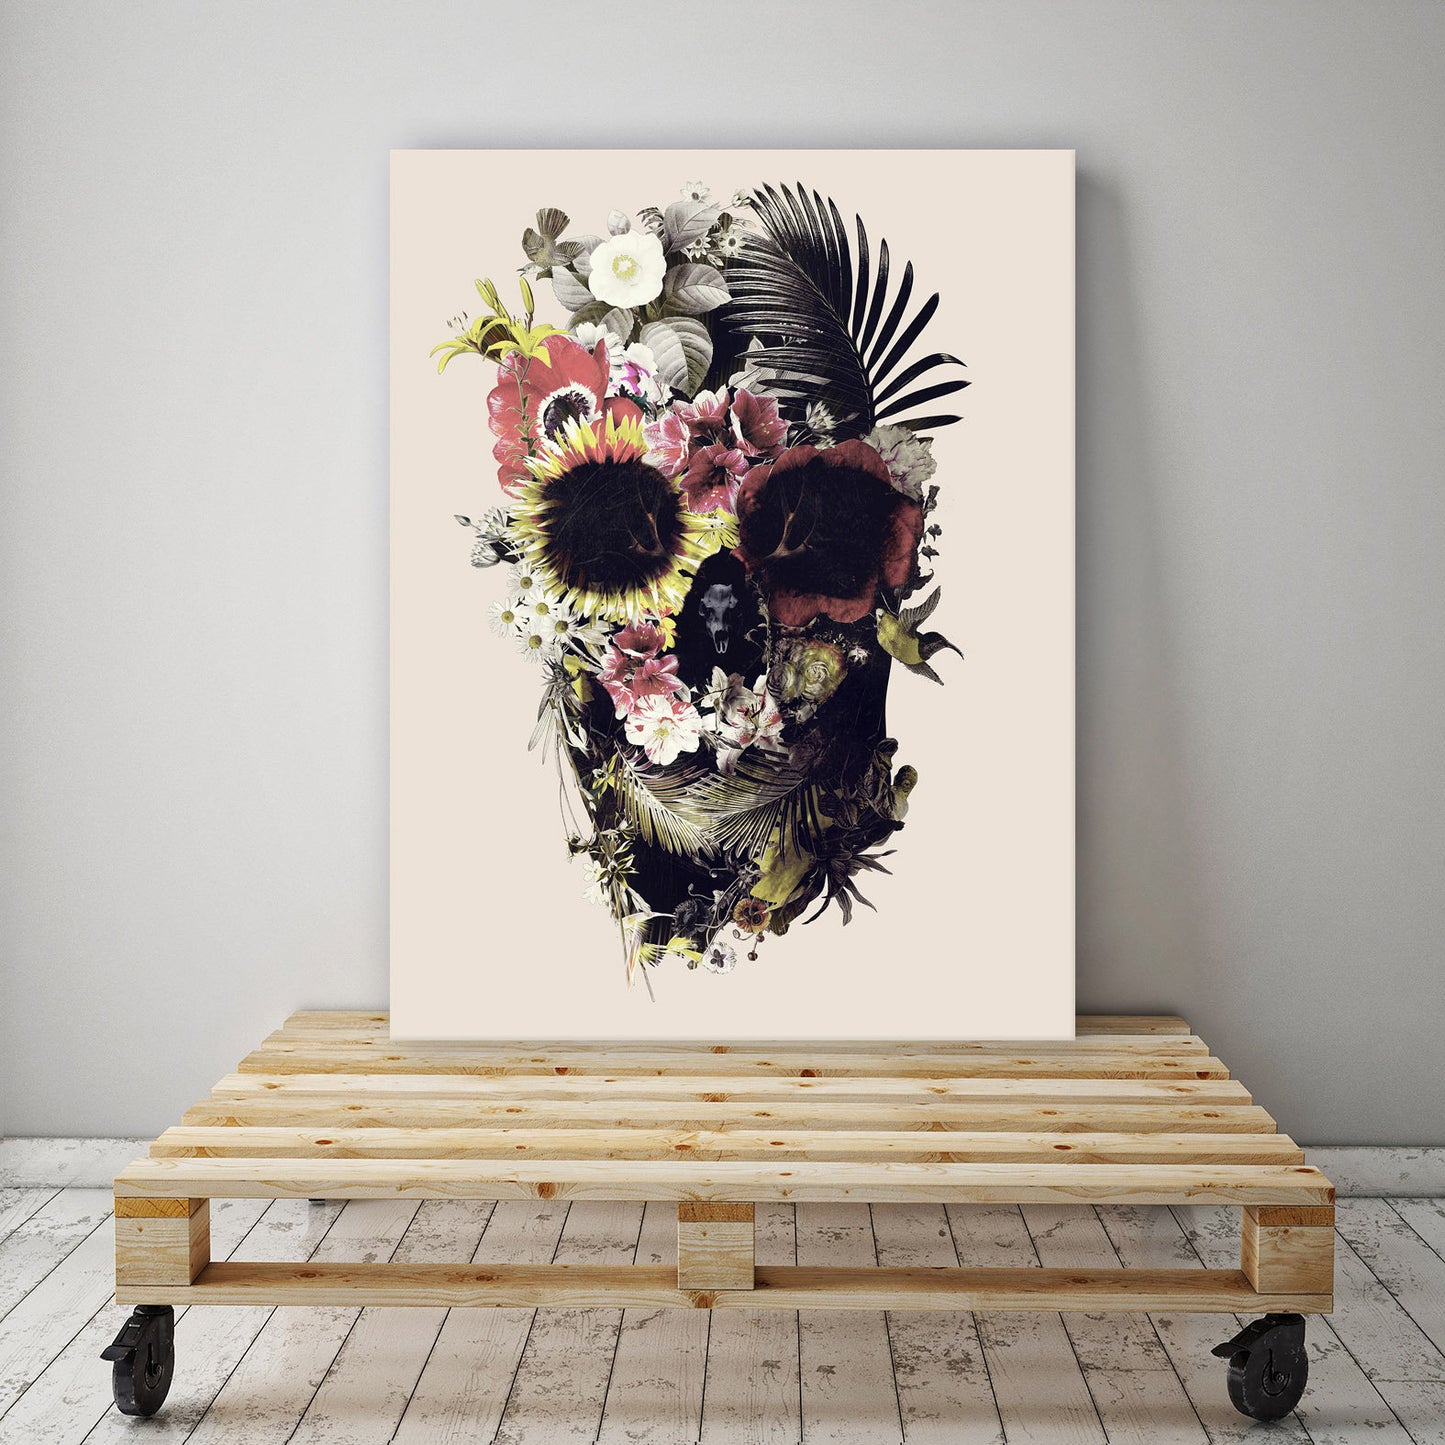 Flower Skull Set Of 3 Canvas Print, Light Skull Art Canvas Print Set Home Decor, Sugar Skull Wall Art Print Decor Gift, Skull Art Wall Decor